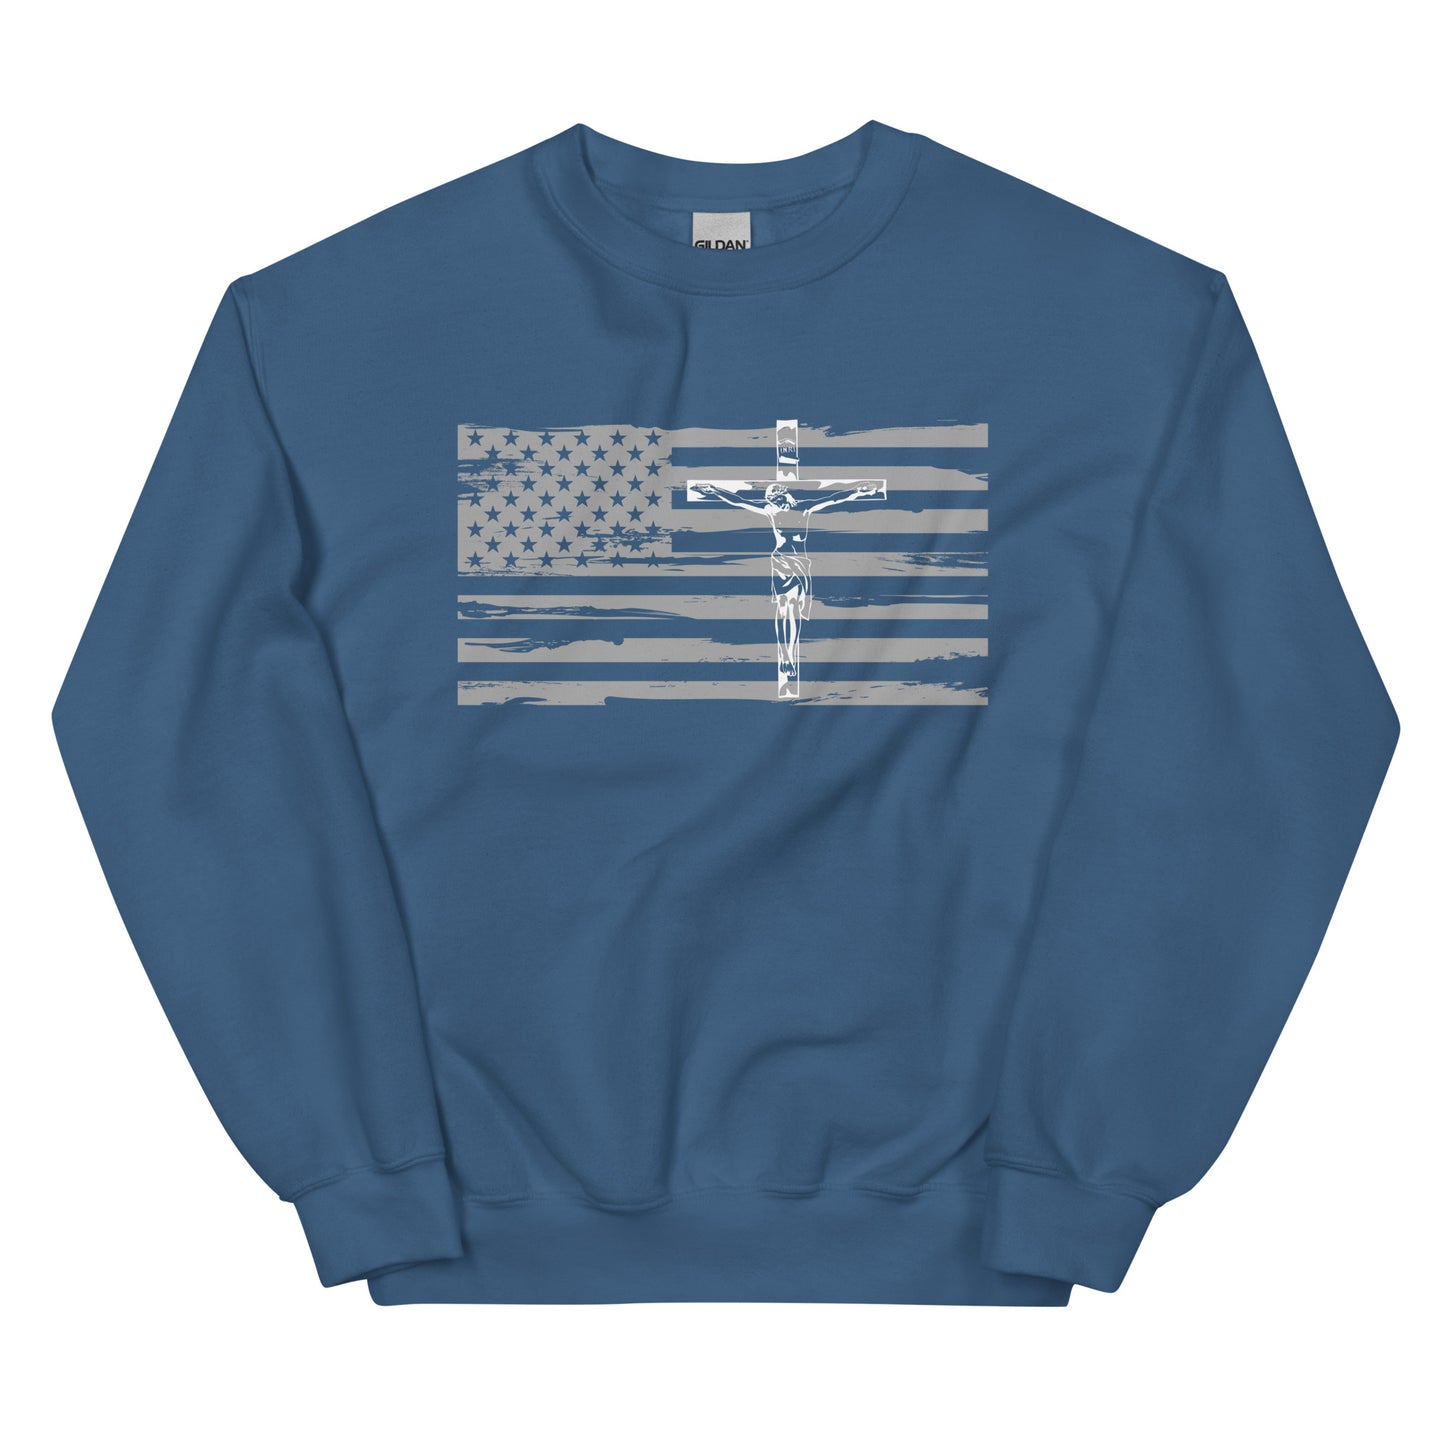 Christ and Liberty Crew Sweatshirt